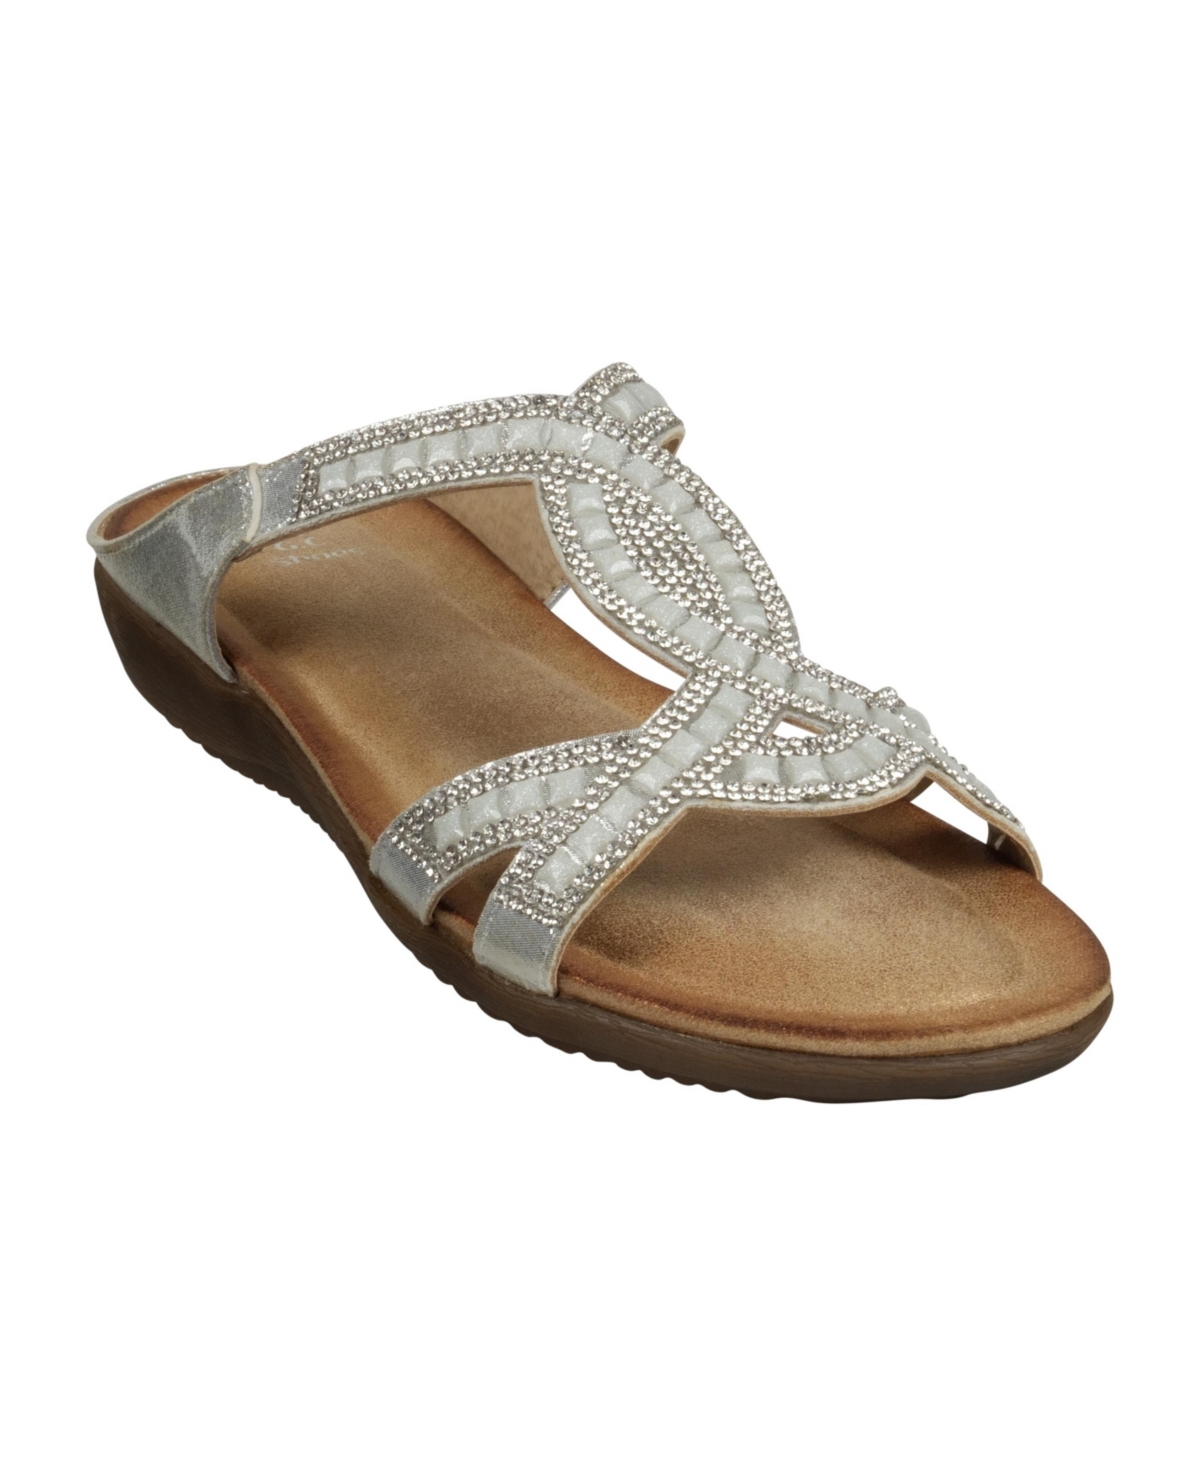 Women's Alora Embellished Slide Flat Sandals - Rose Gold